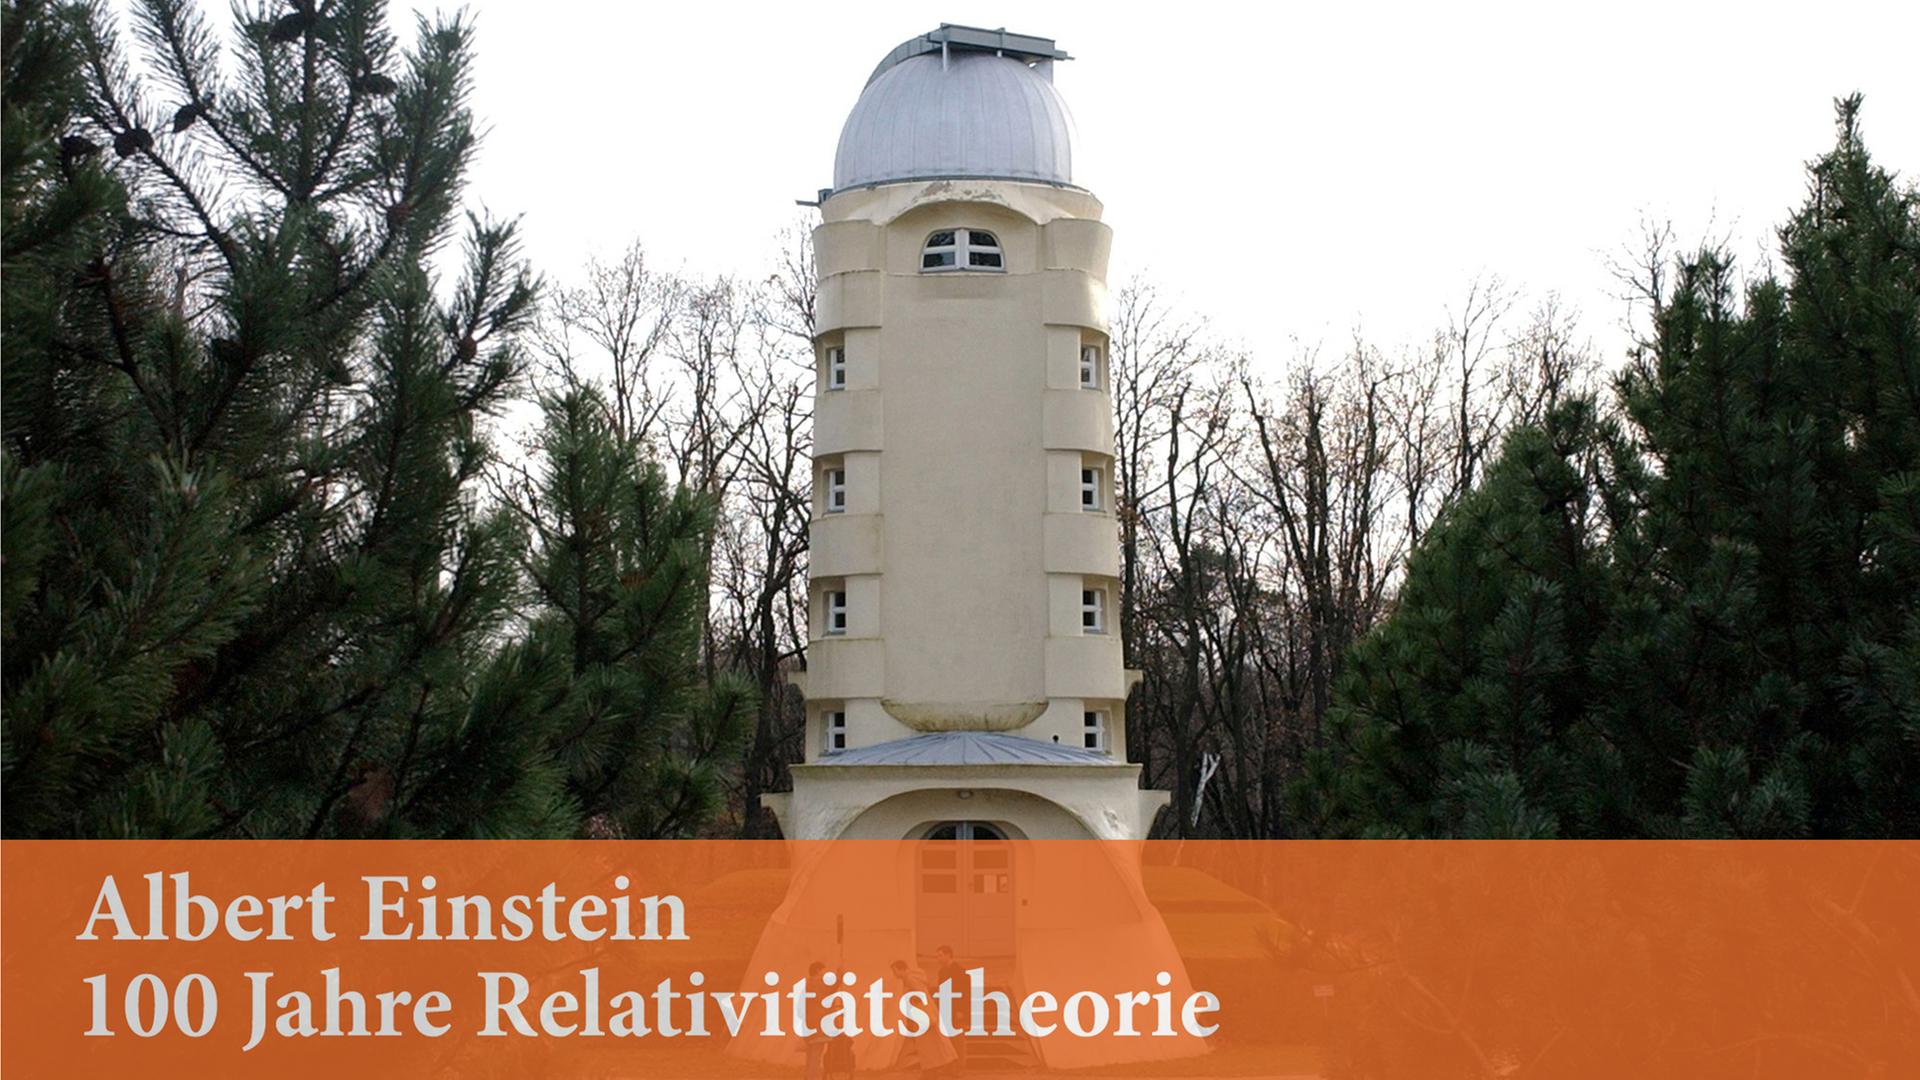 Einsteinturm auf dem Telegrafenberg in Potsdam